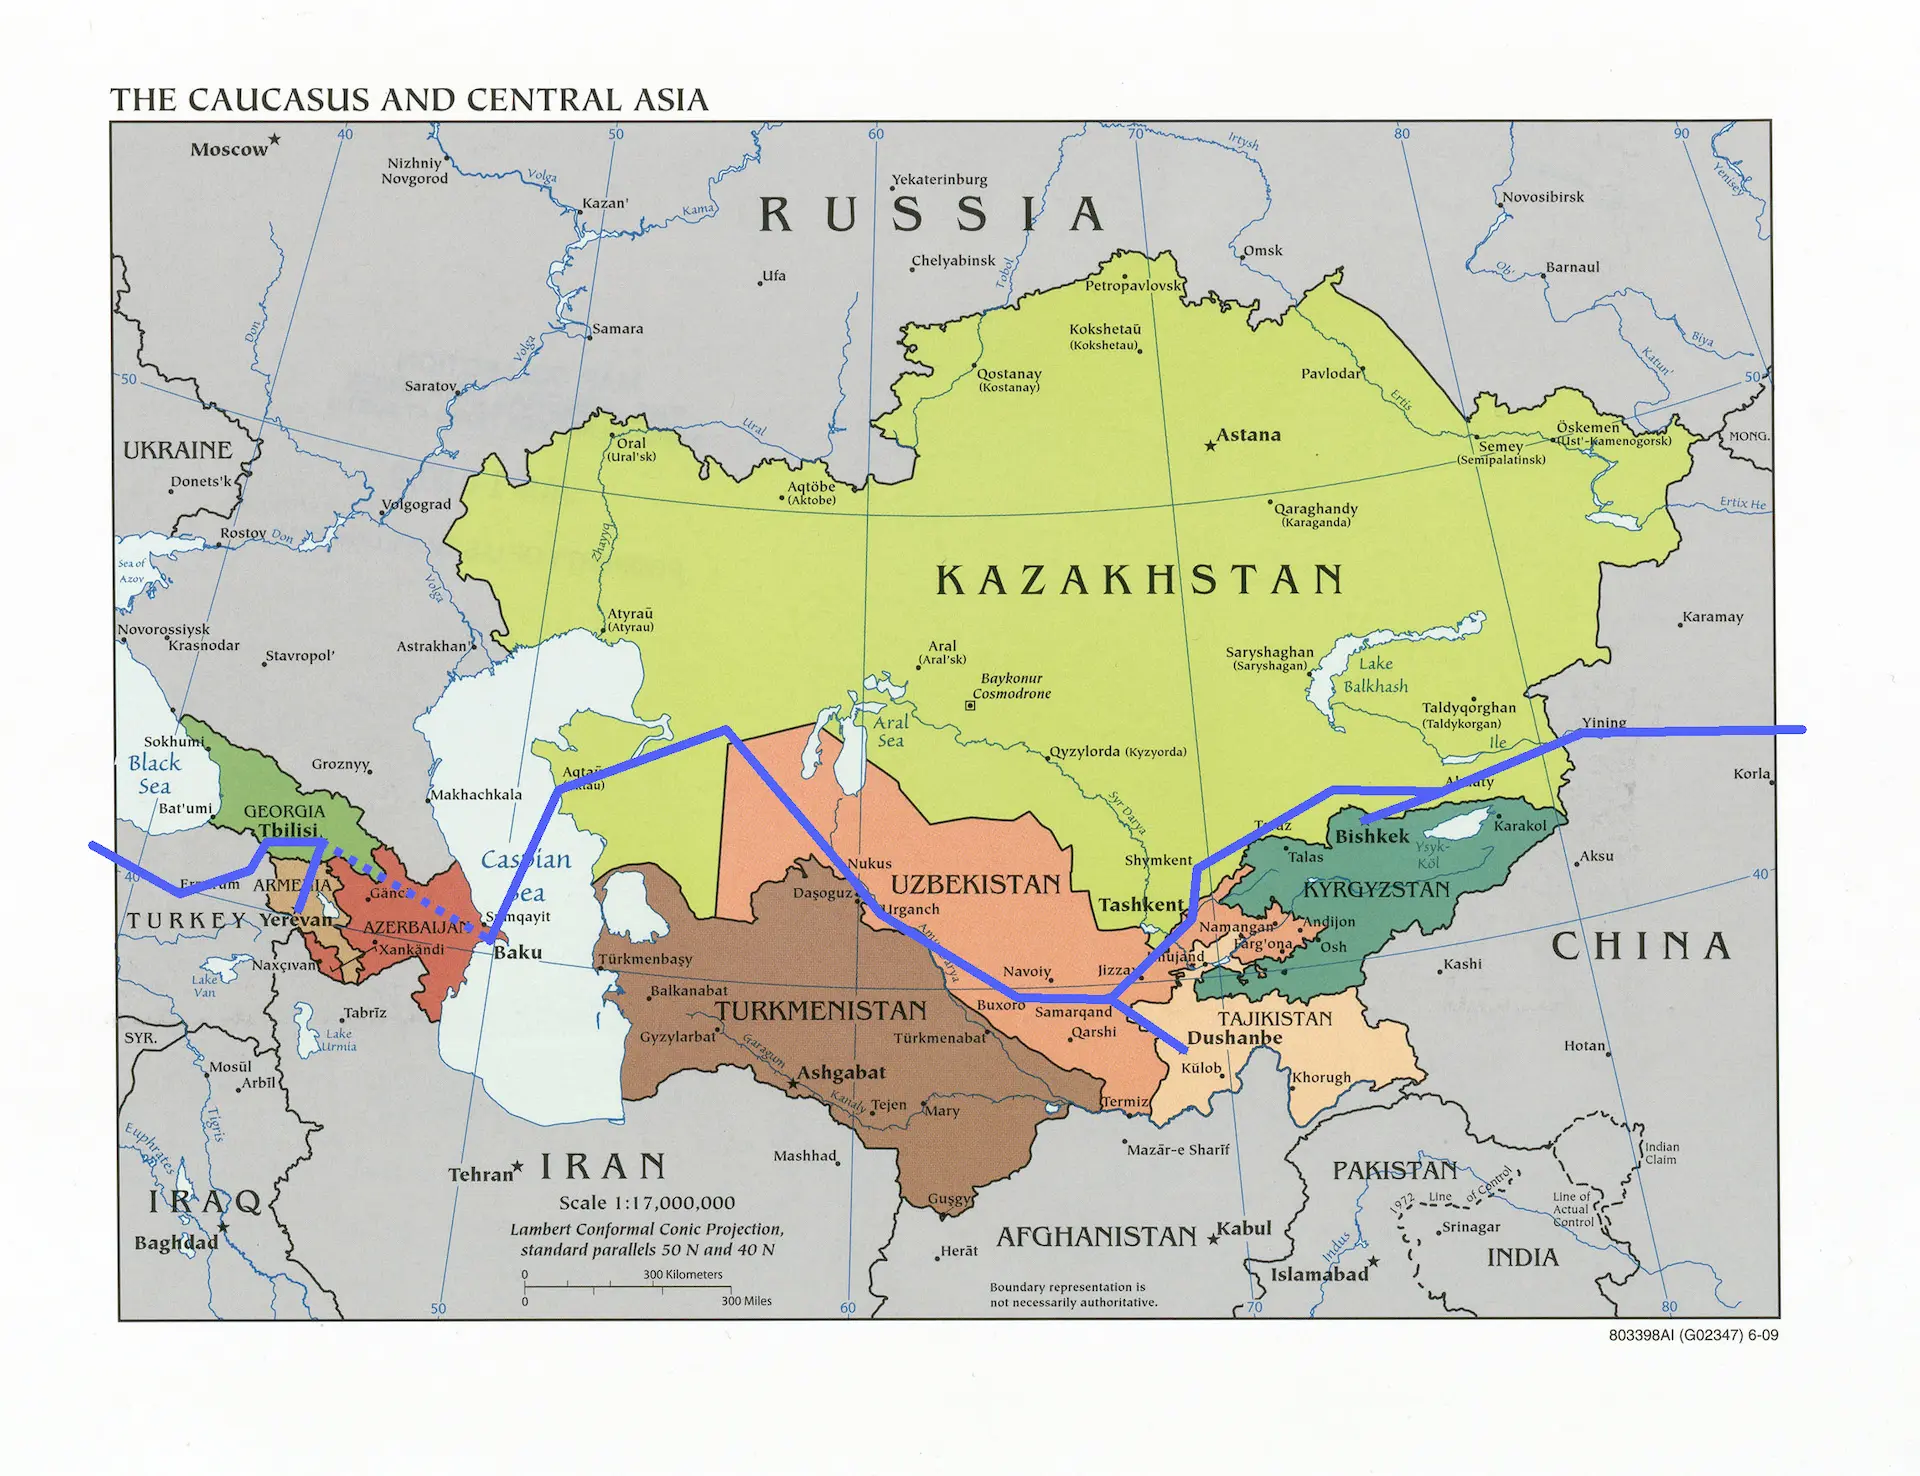 Une carte d'Asie Centrale qui montre notre parcours. On pense passer par la Turquie, la Géorgie (et Arménie), l'Azerbaïdjan, la Caspienne sur cargo, le Kazakhstan, l'Ouzbékistan (et Tadjikistan), re le Kazakhstan (et Kirghizistan), pour finalement entrer en Chine.